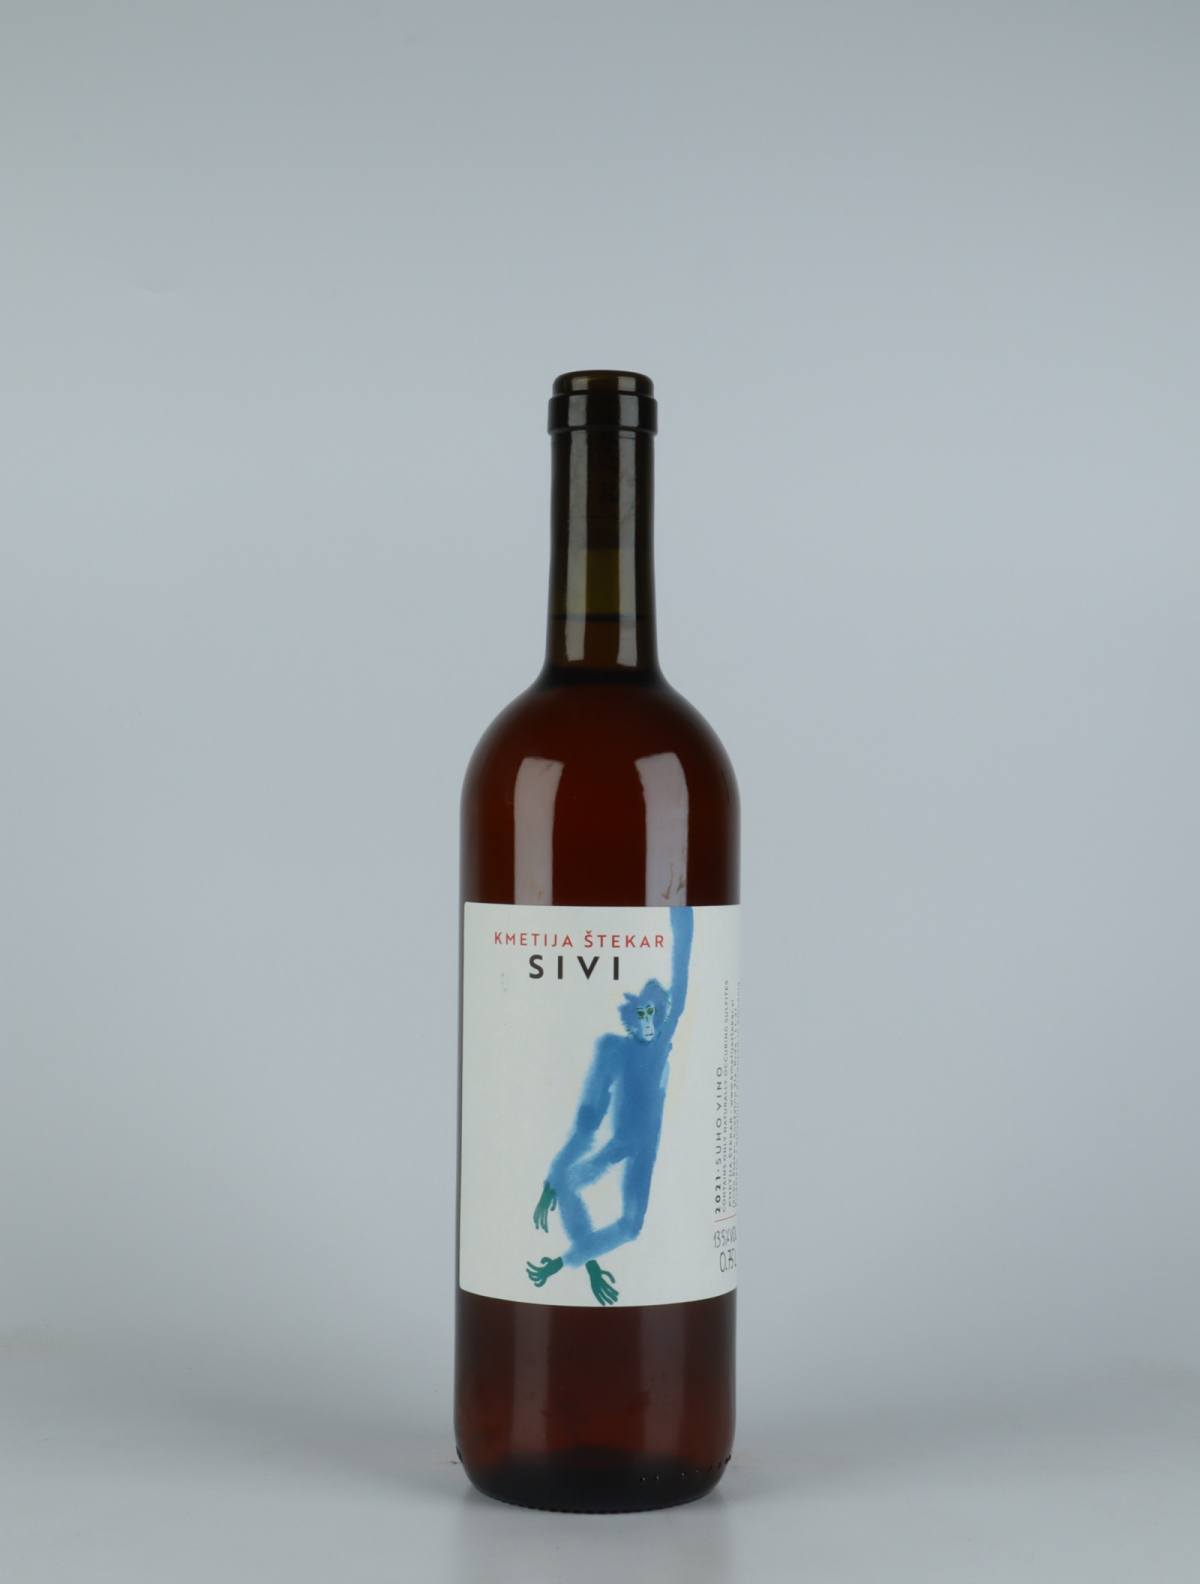 A bottle 2021 Sivi Orange wine from Kmetija Stekar, Brda in Slovenia